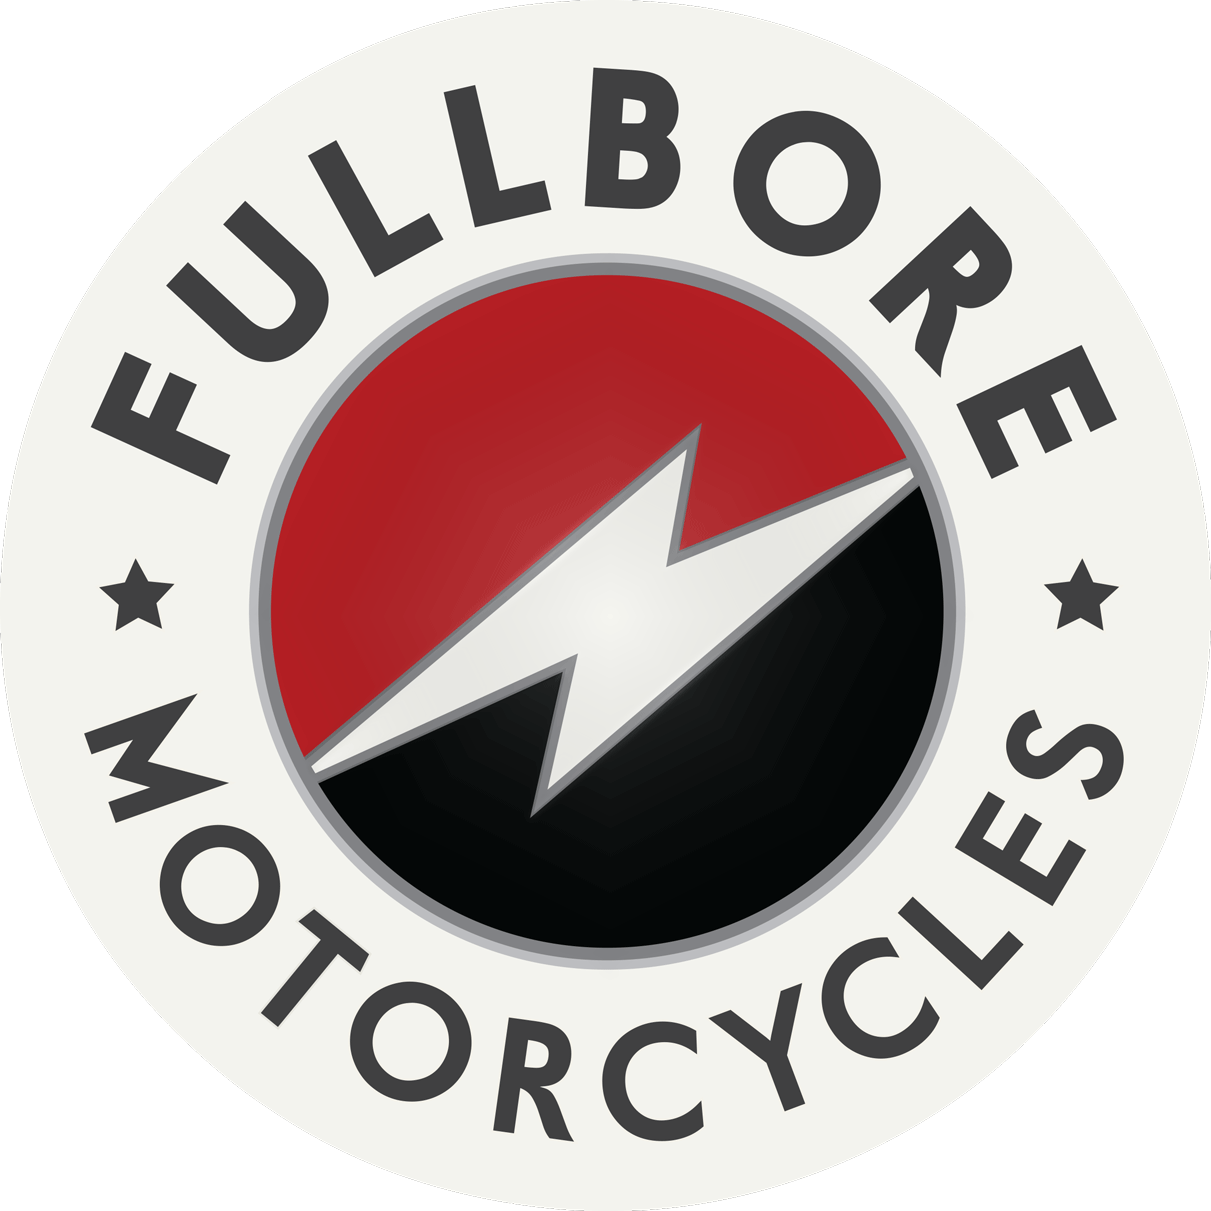 FULLBORE Motorcycles